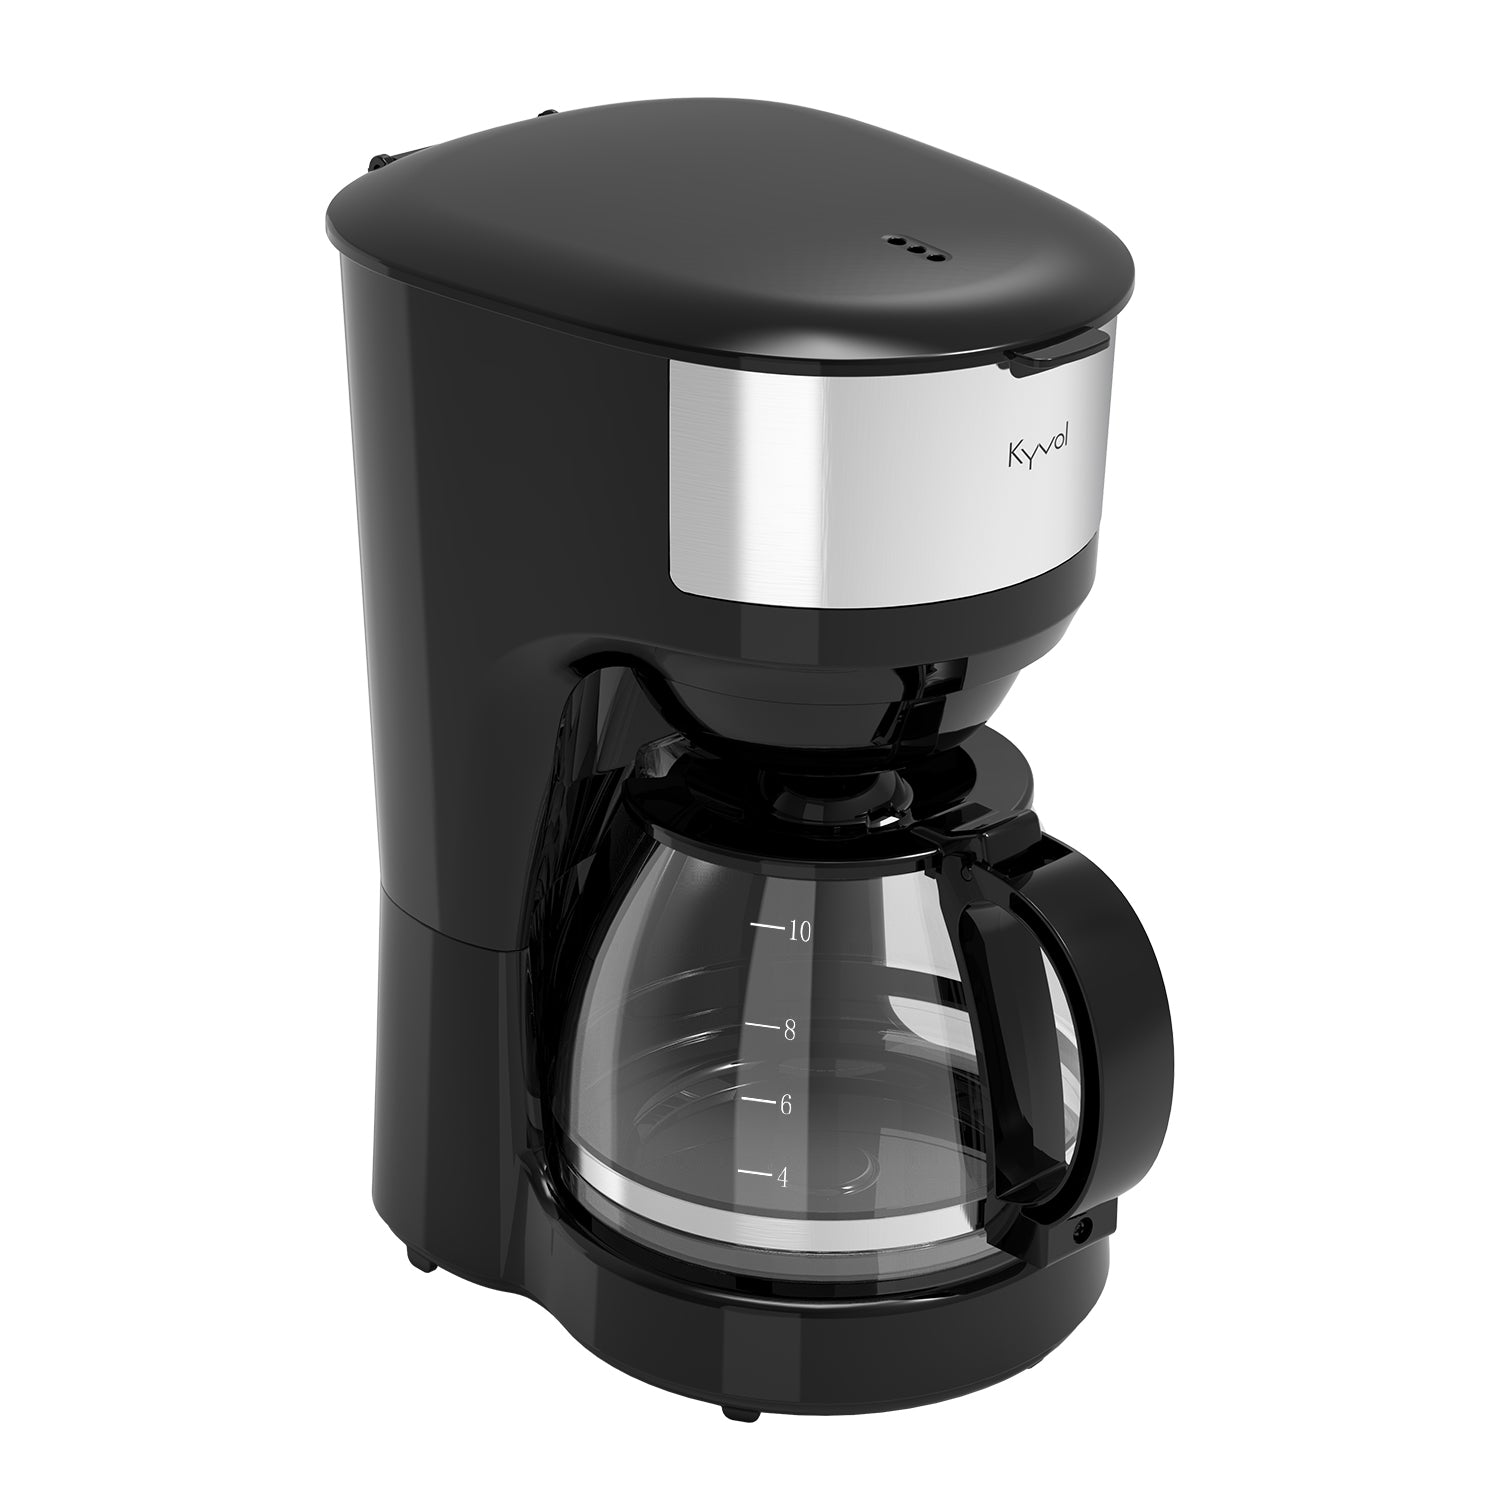 Кофеварка капельного типа Kyvol CM-DM102A черная кофеварка капельного типа kyvol cm dm121a черная